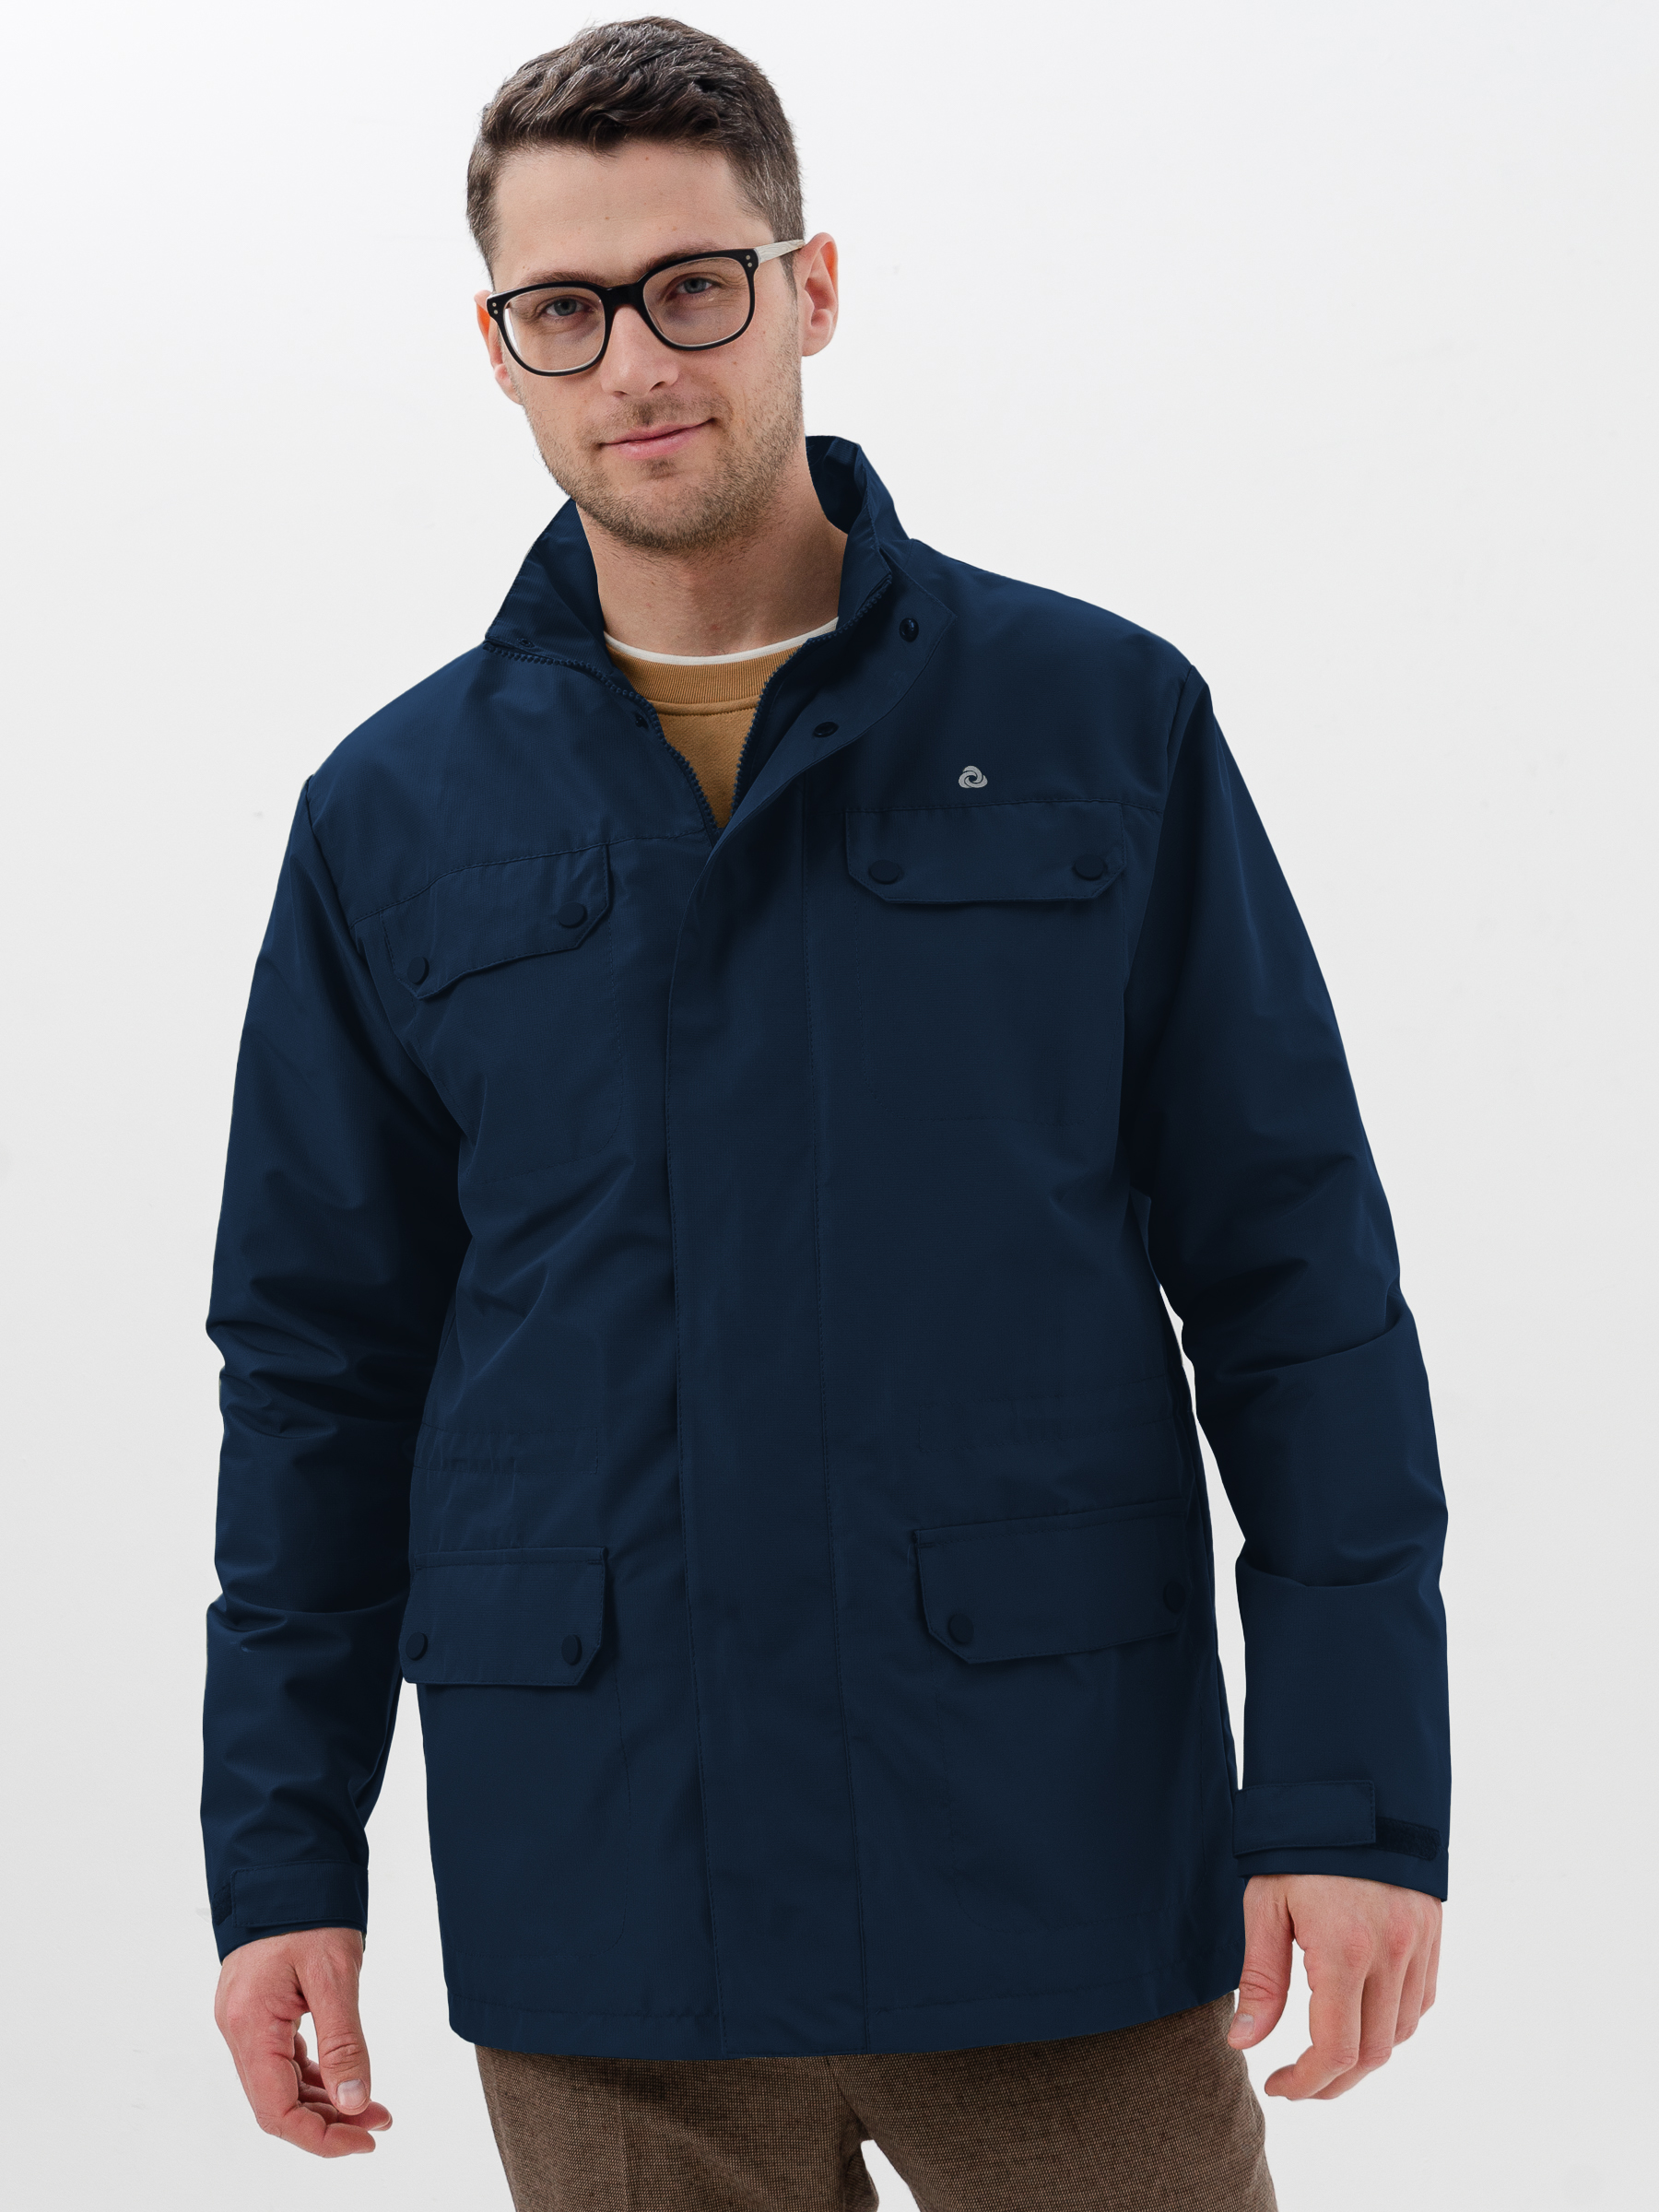 Куртка мужская CosmoTex 241374 синяя 60-62/182-188